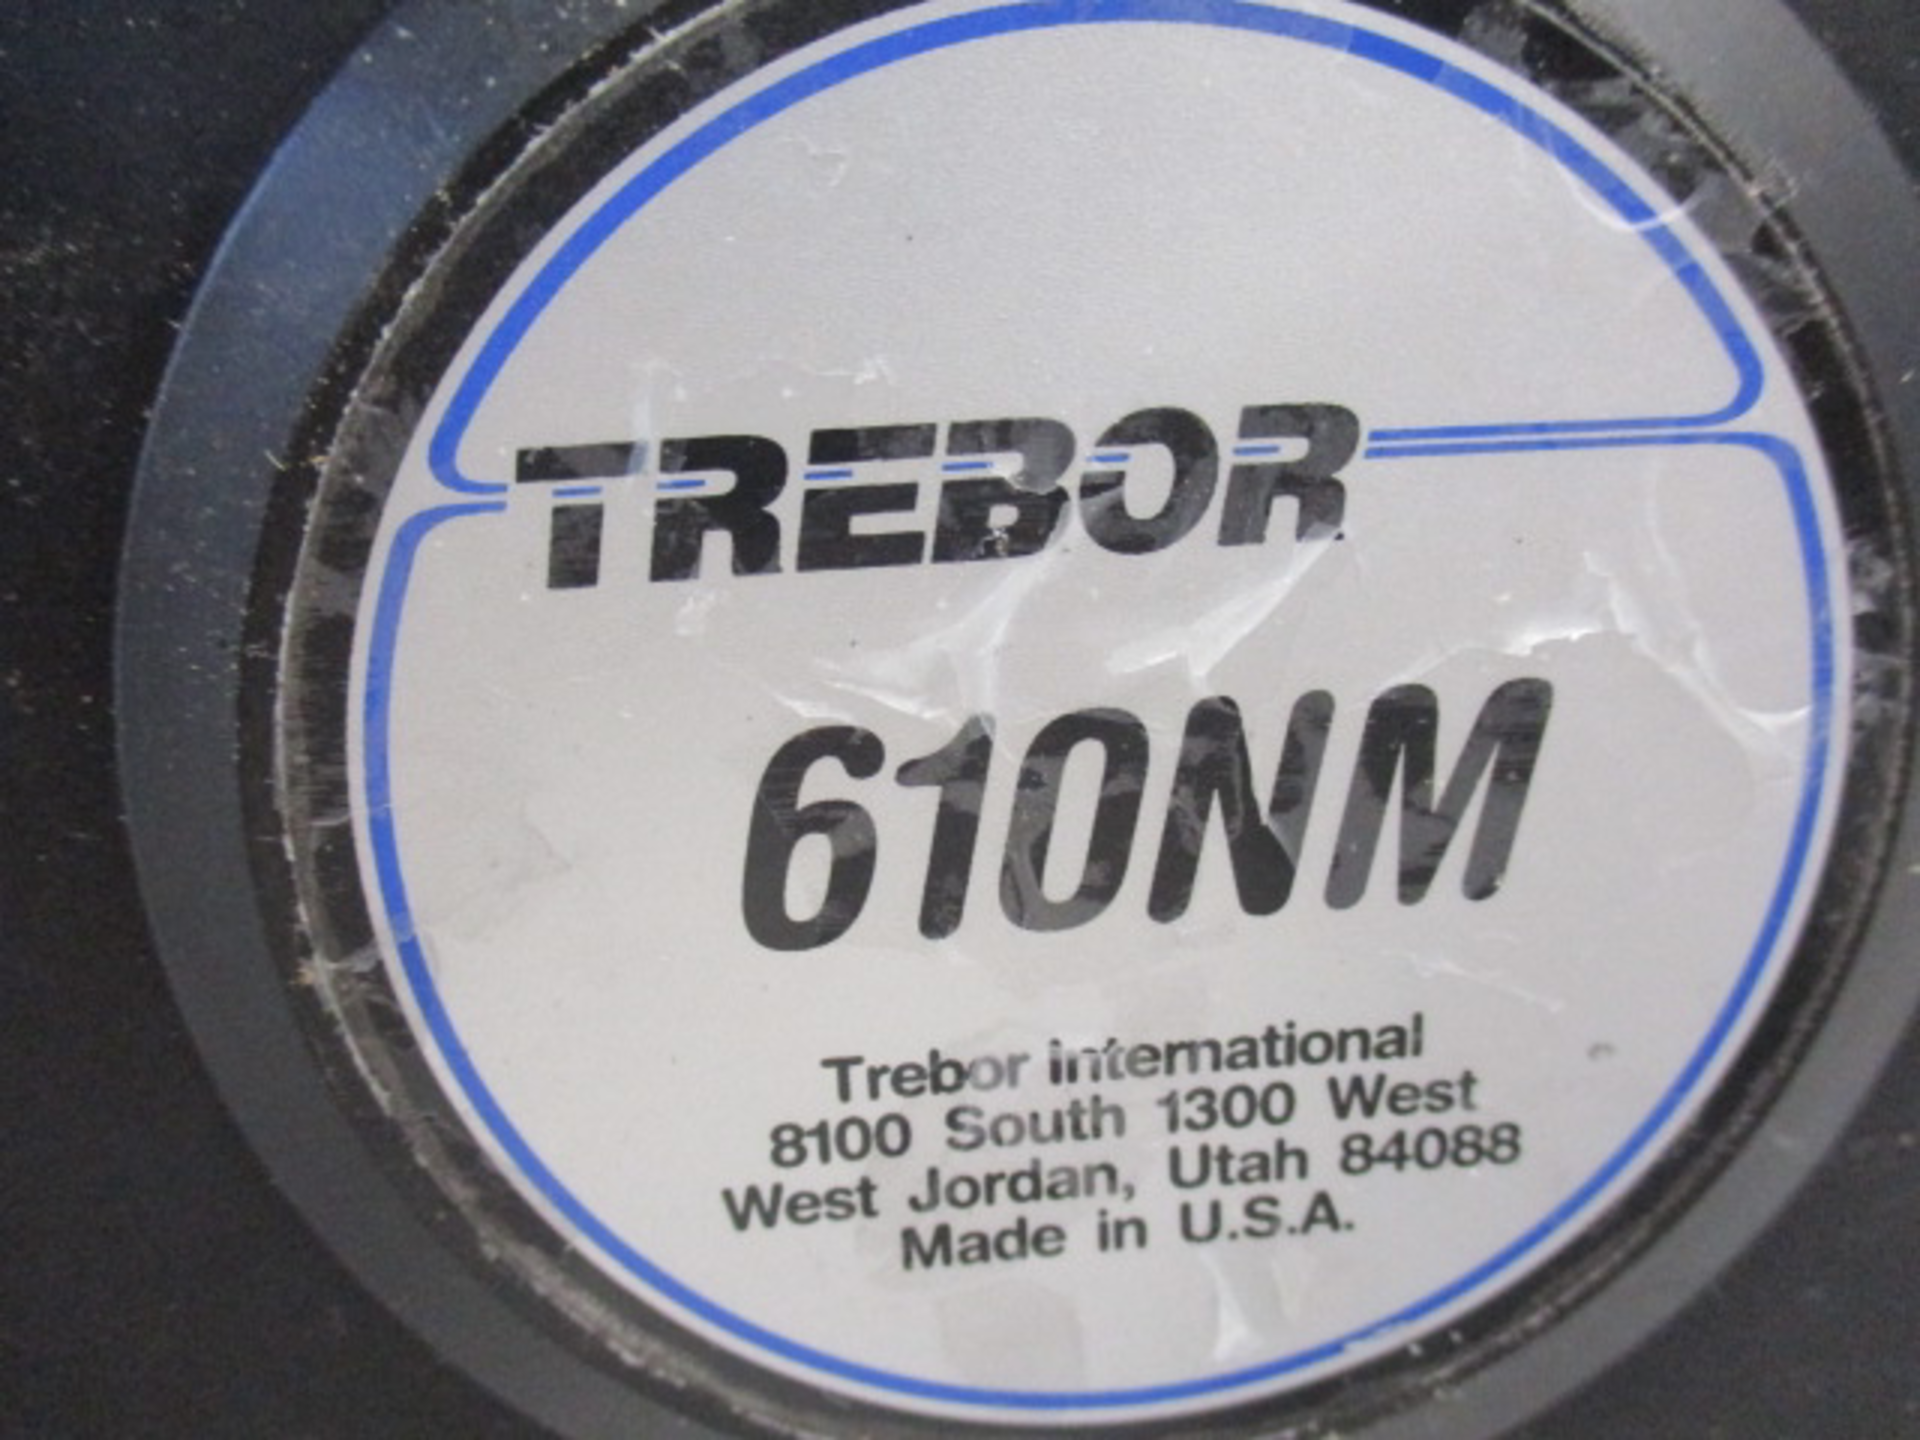 Trebor 610nm Air Pump - Image 4 of 4